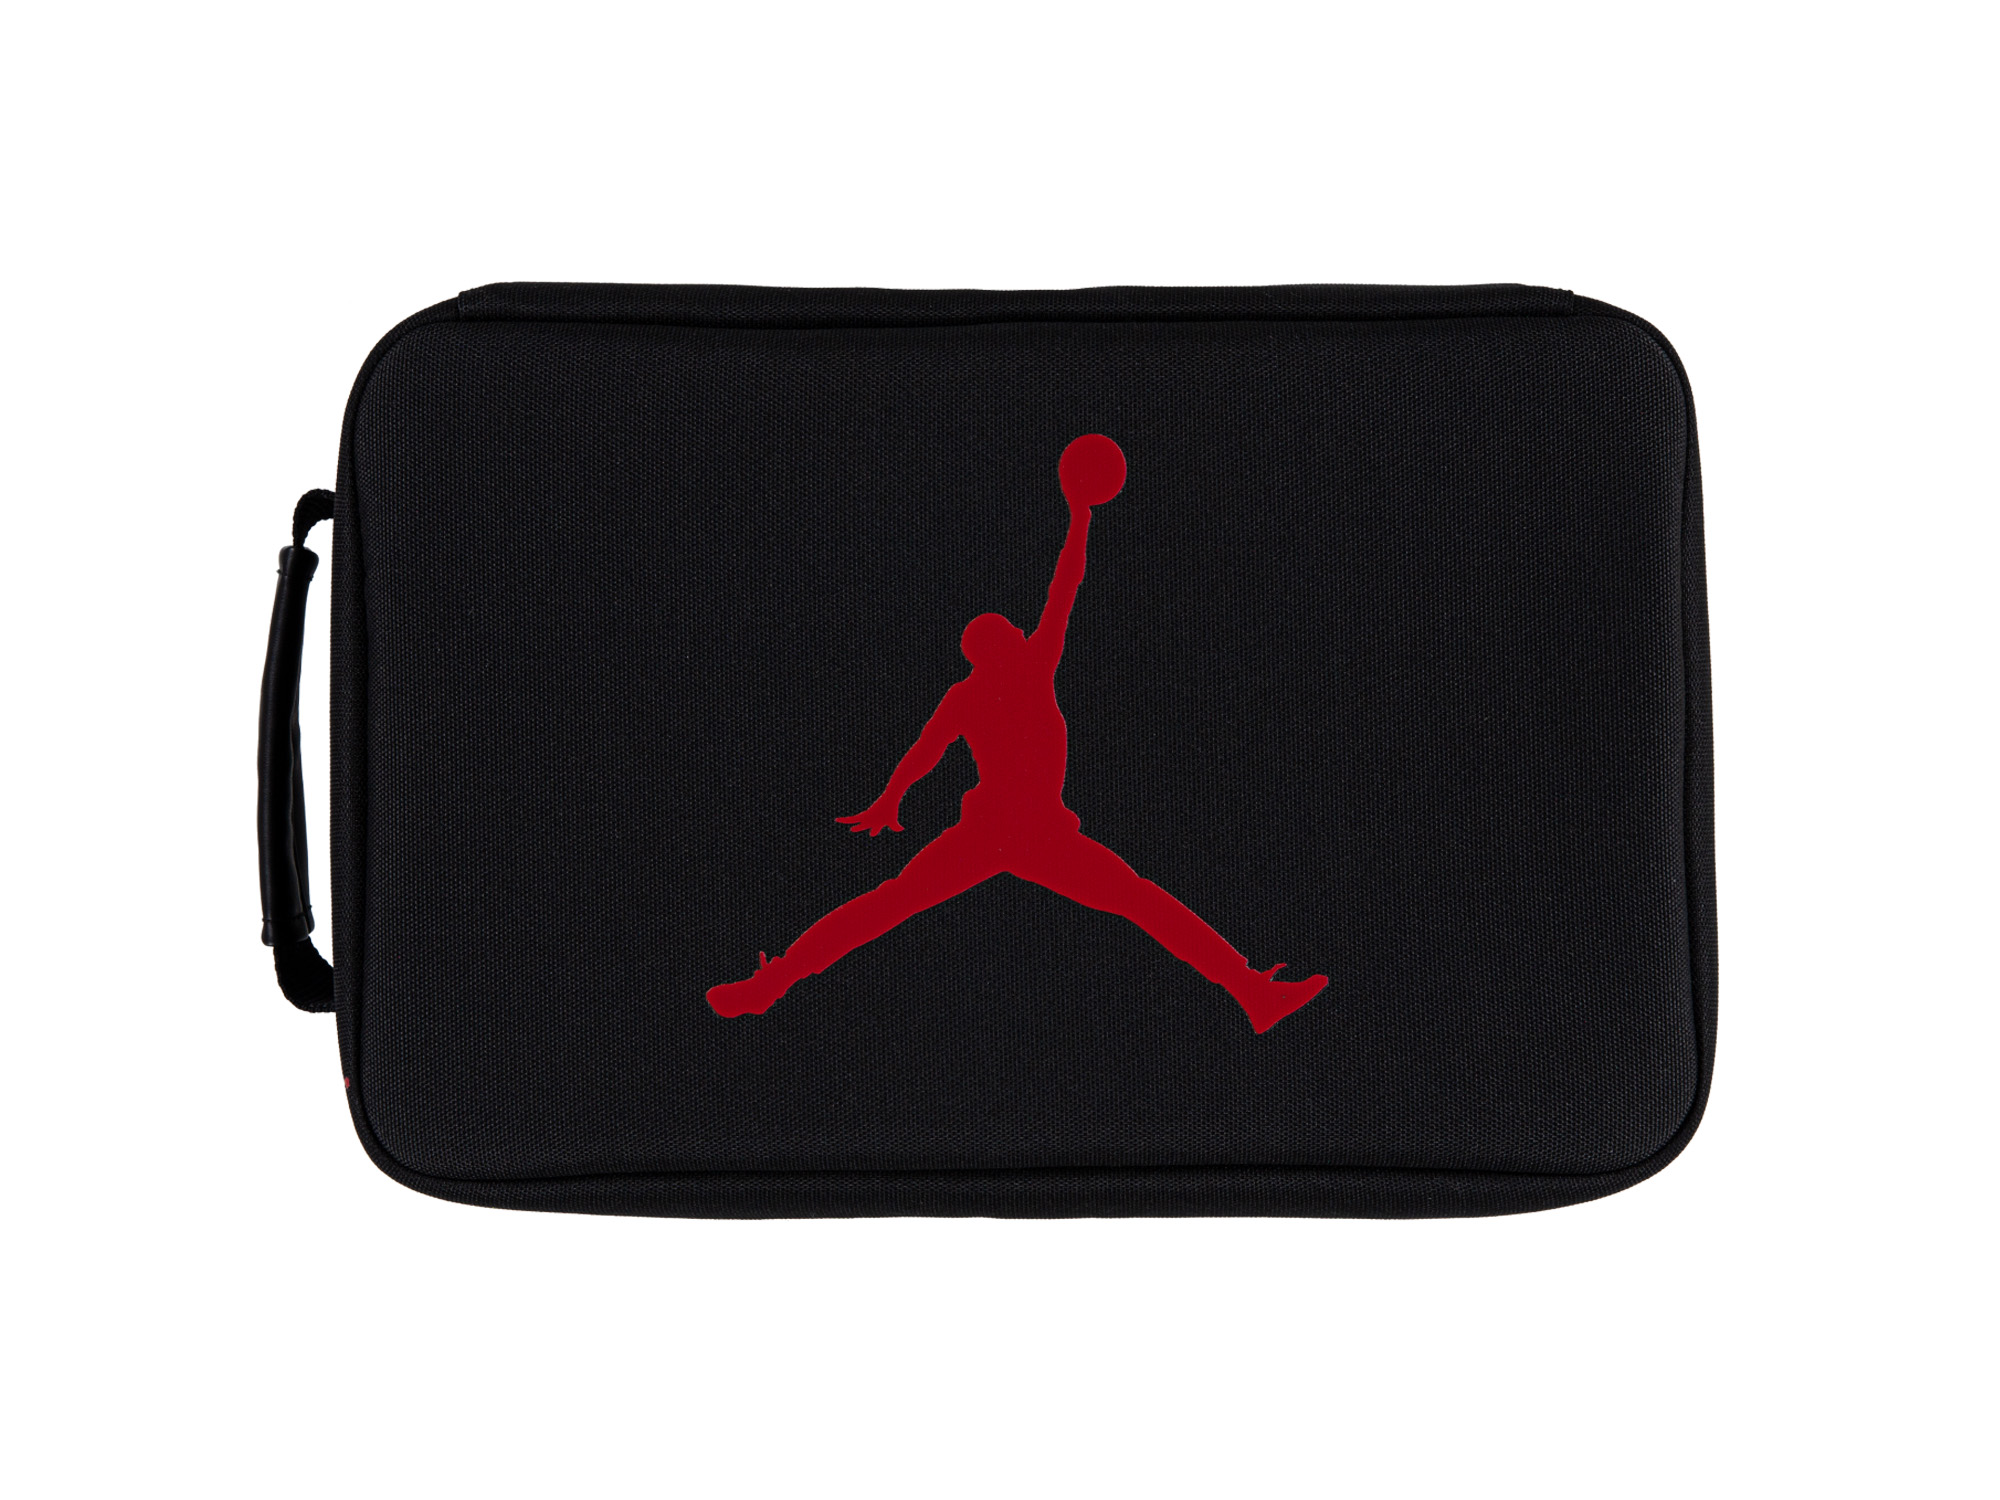 Jordan Shoebox Tasche